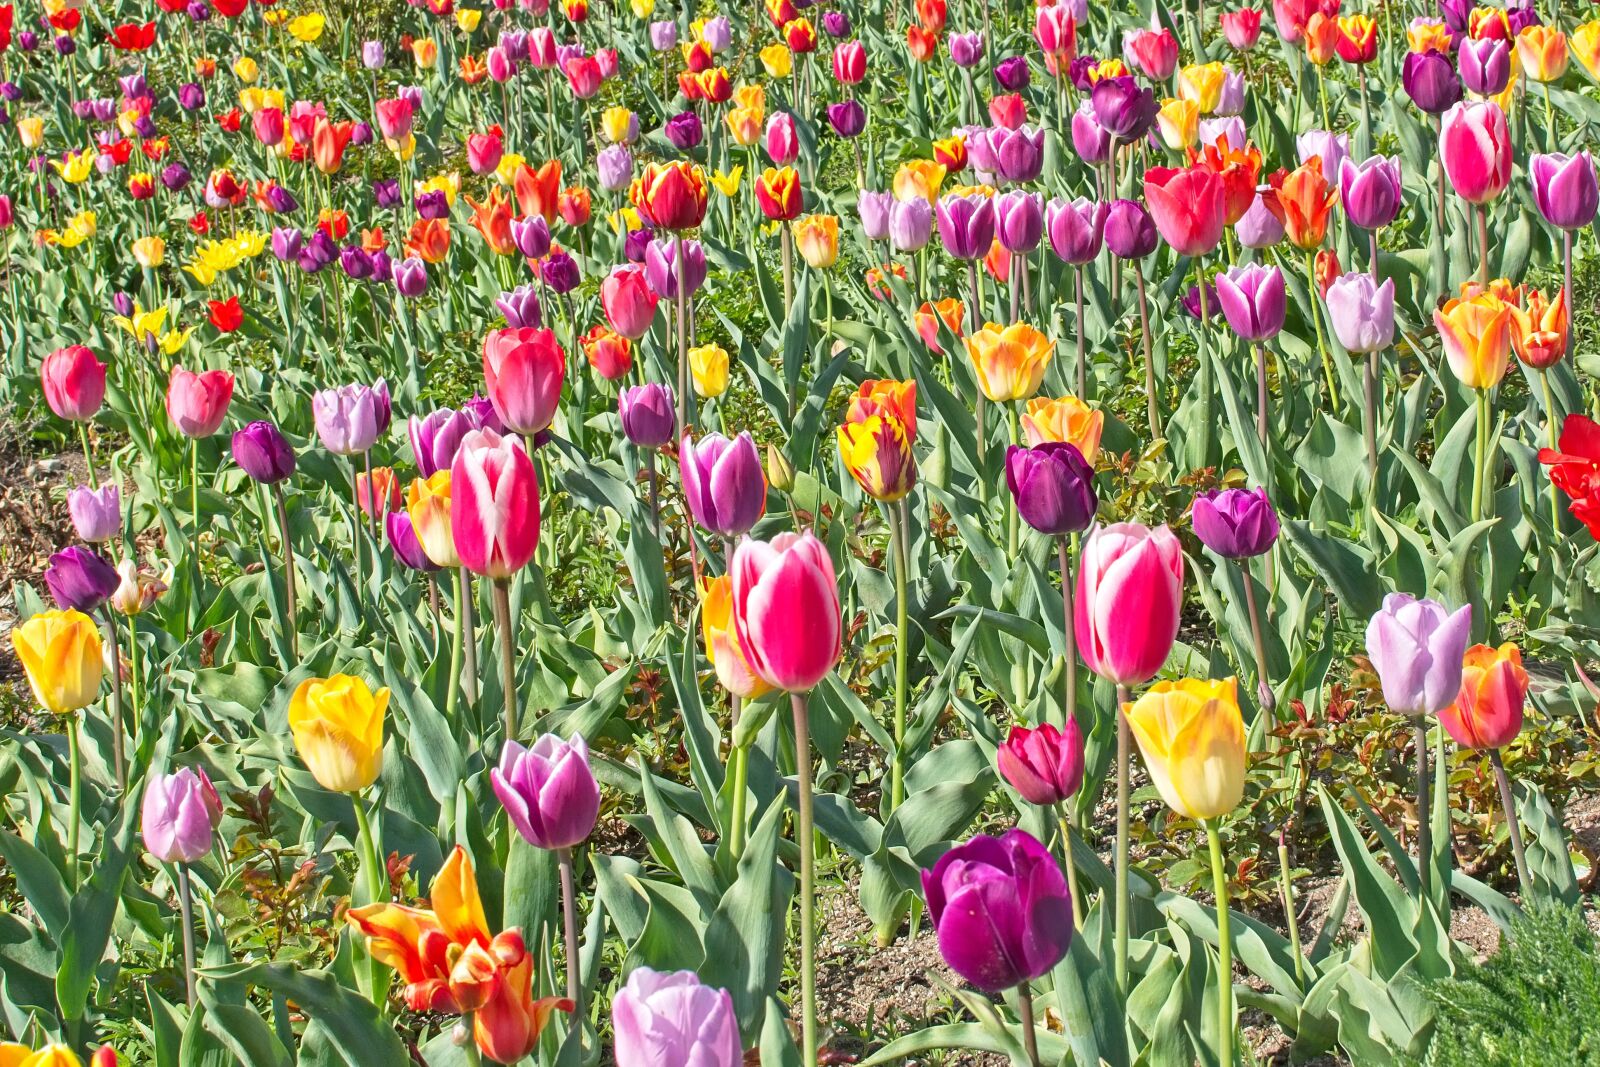 Nikon D7100 + Nikon AF-S DX Nikkor 35mm F1.8G sample photo. Tulips, tulip field, spring photography